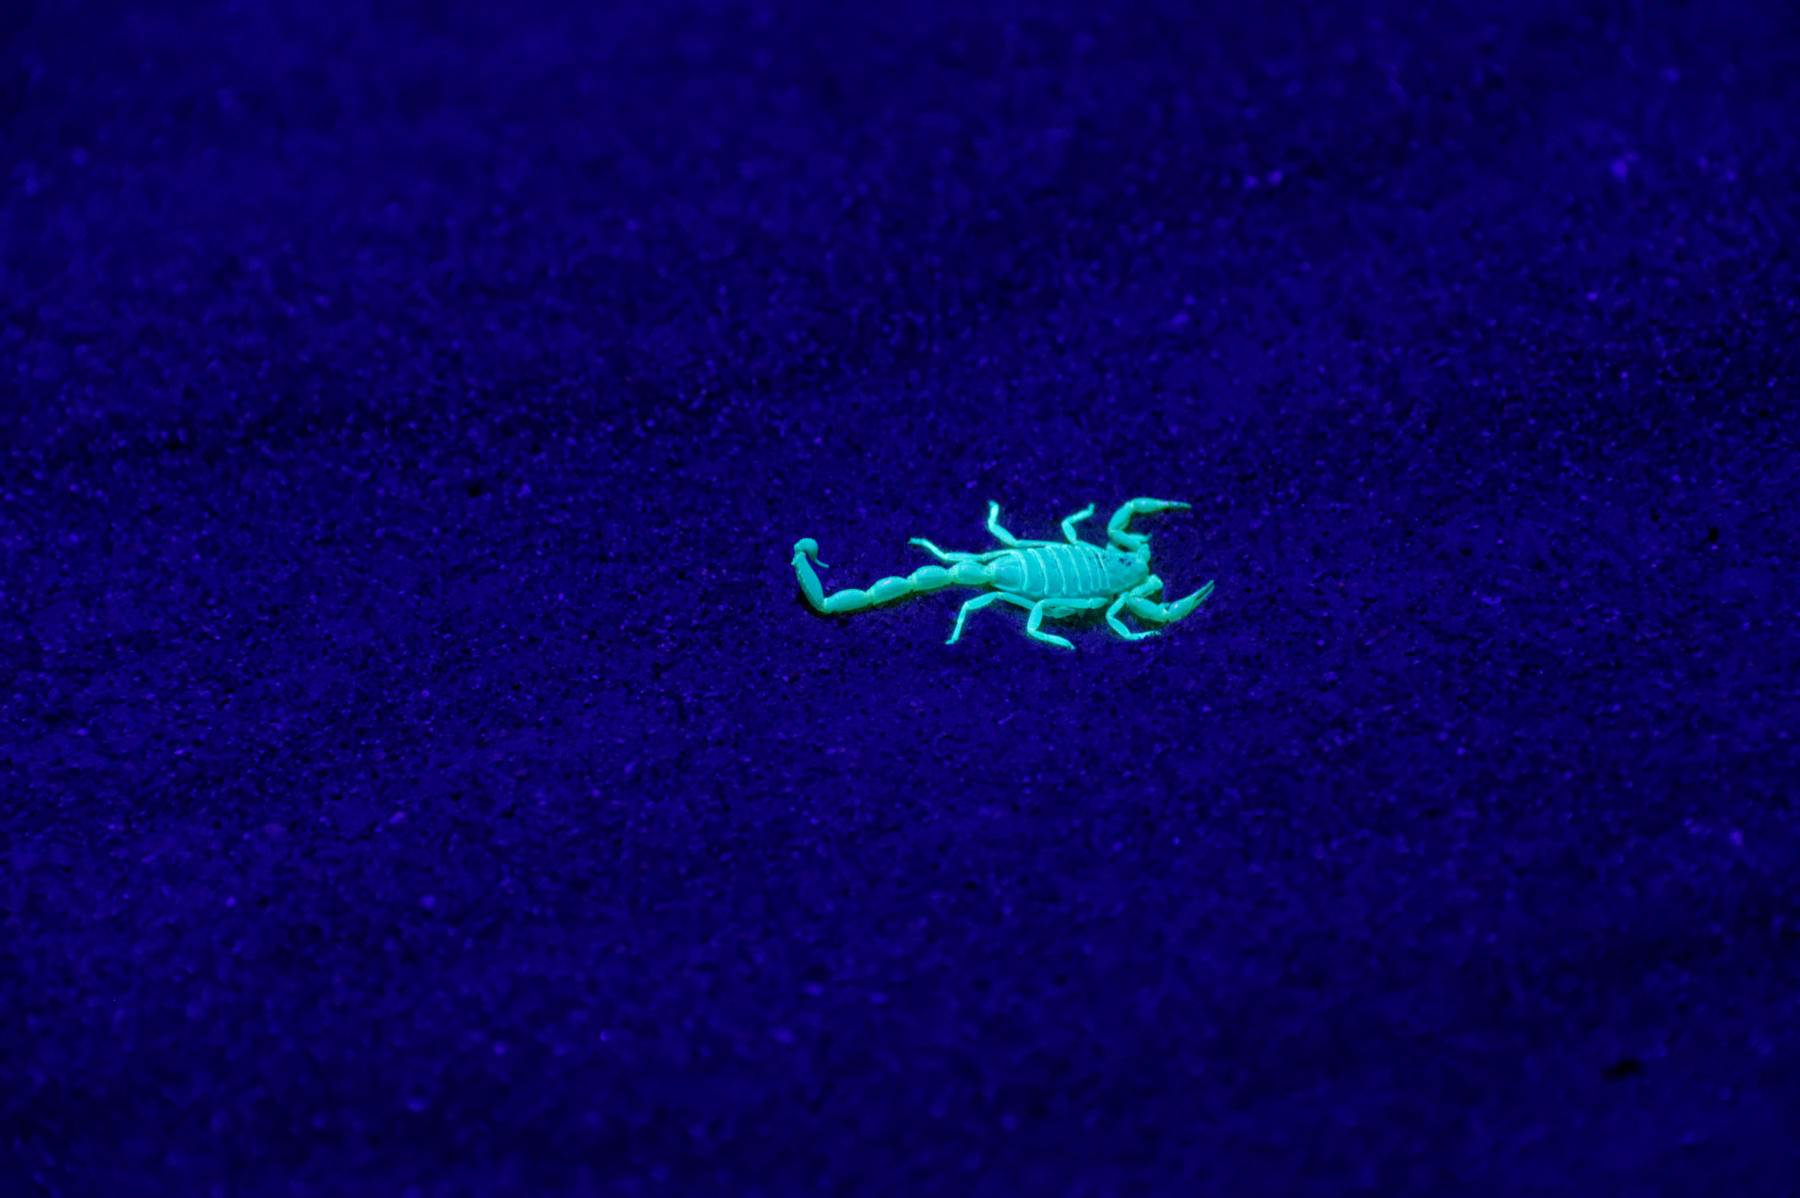 A scorpion under ultra violet light